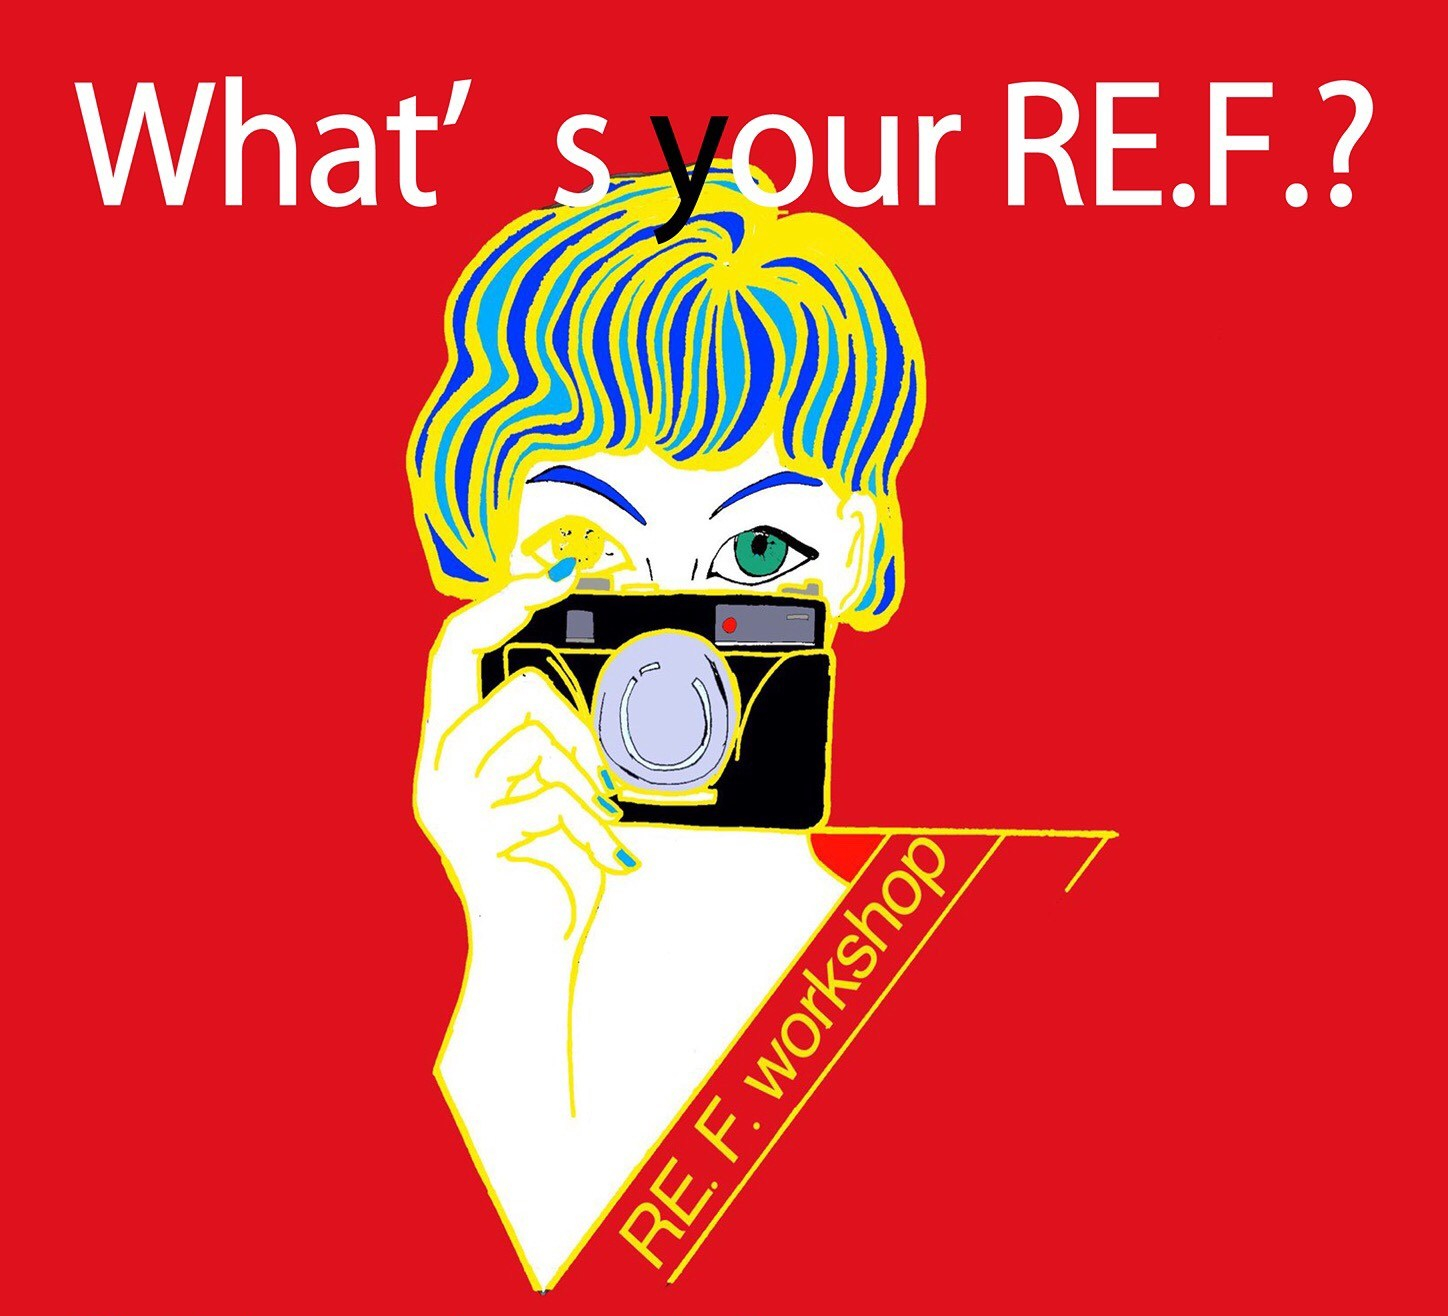 2017年4月22日「RE.F. workshop: “What fascinates you about your research?”」